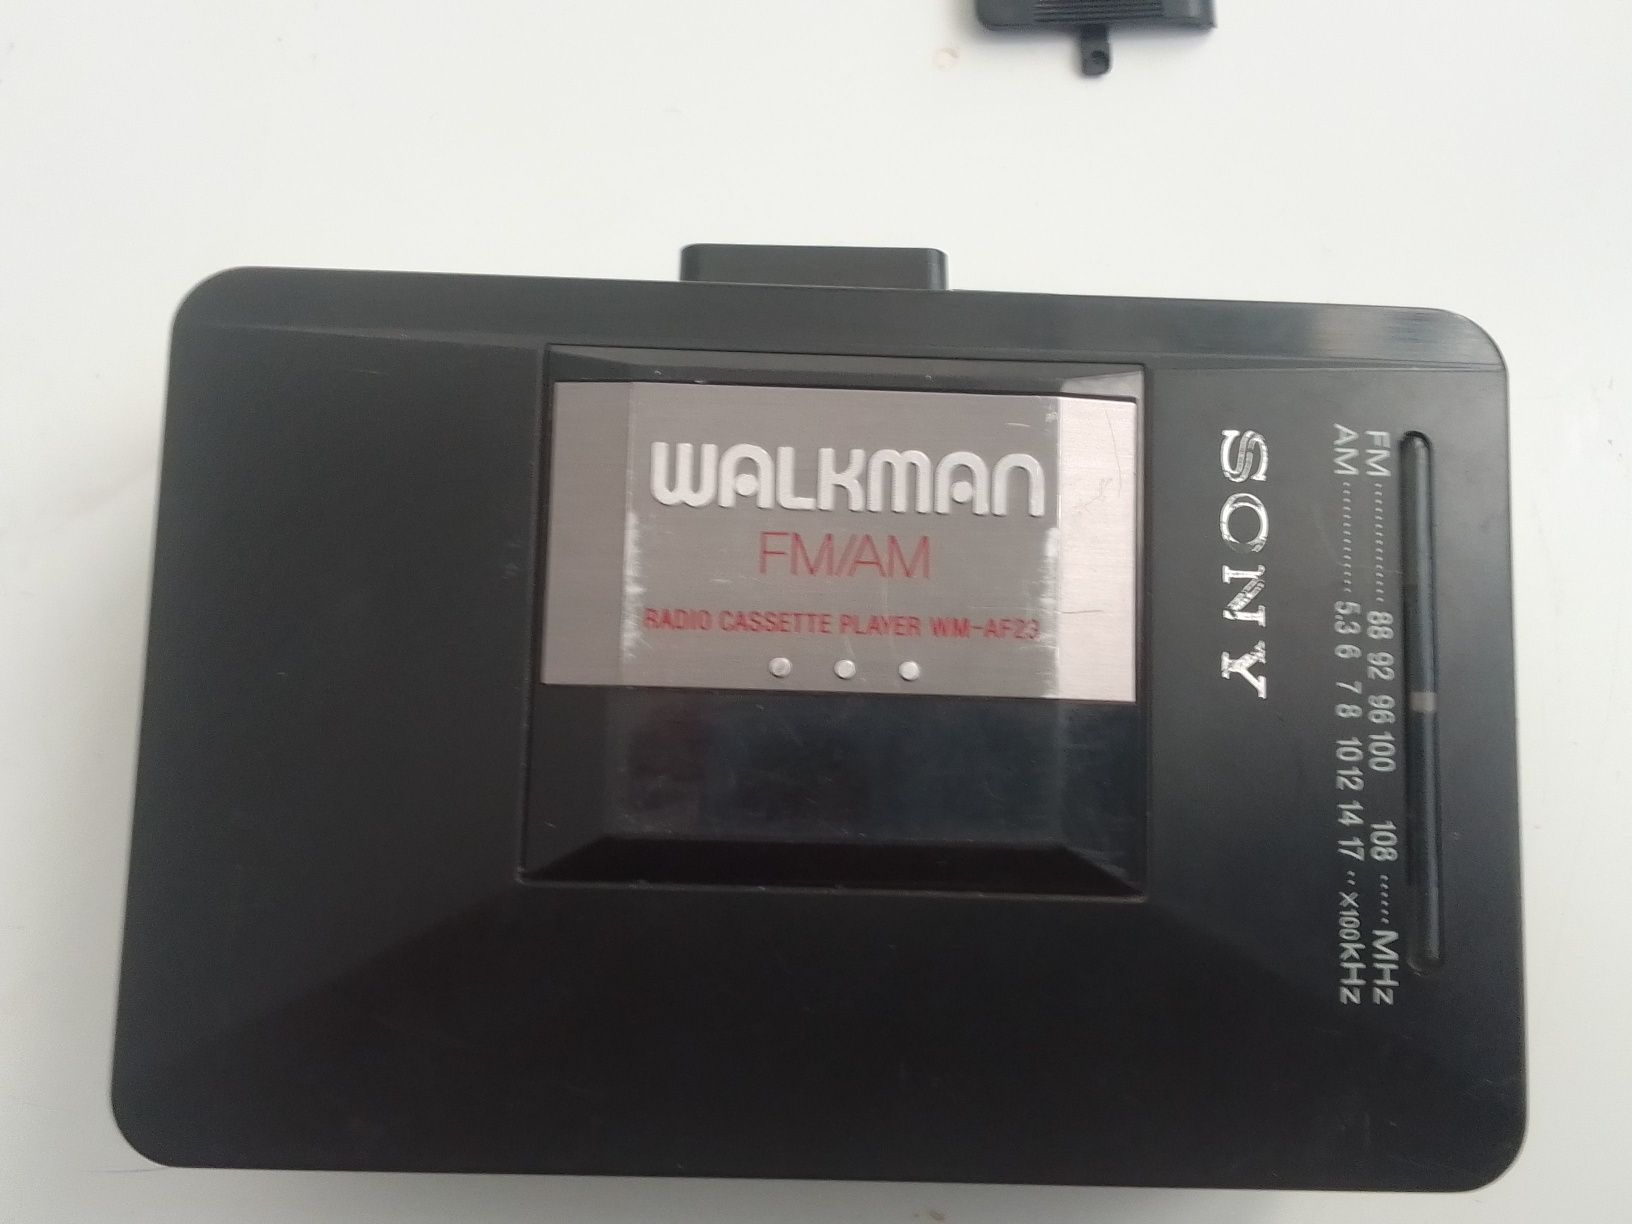 Walkman sony FM/AM model wm-af23